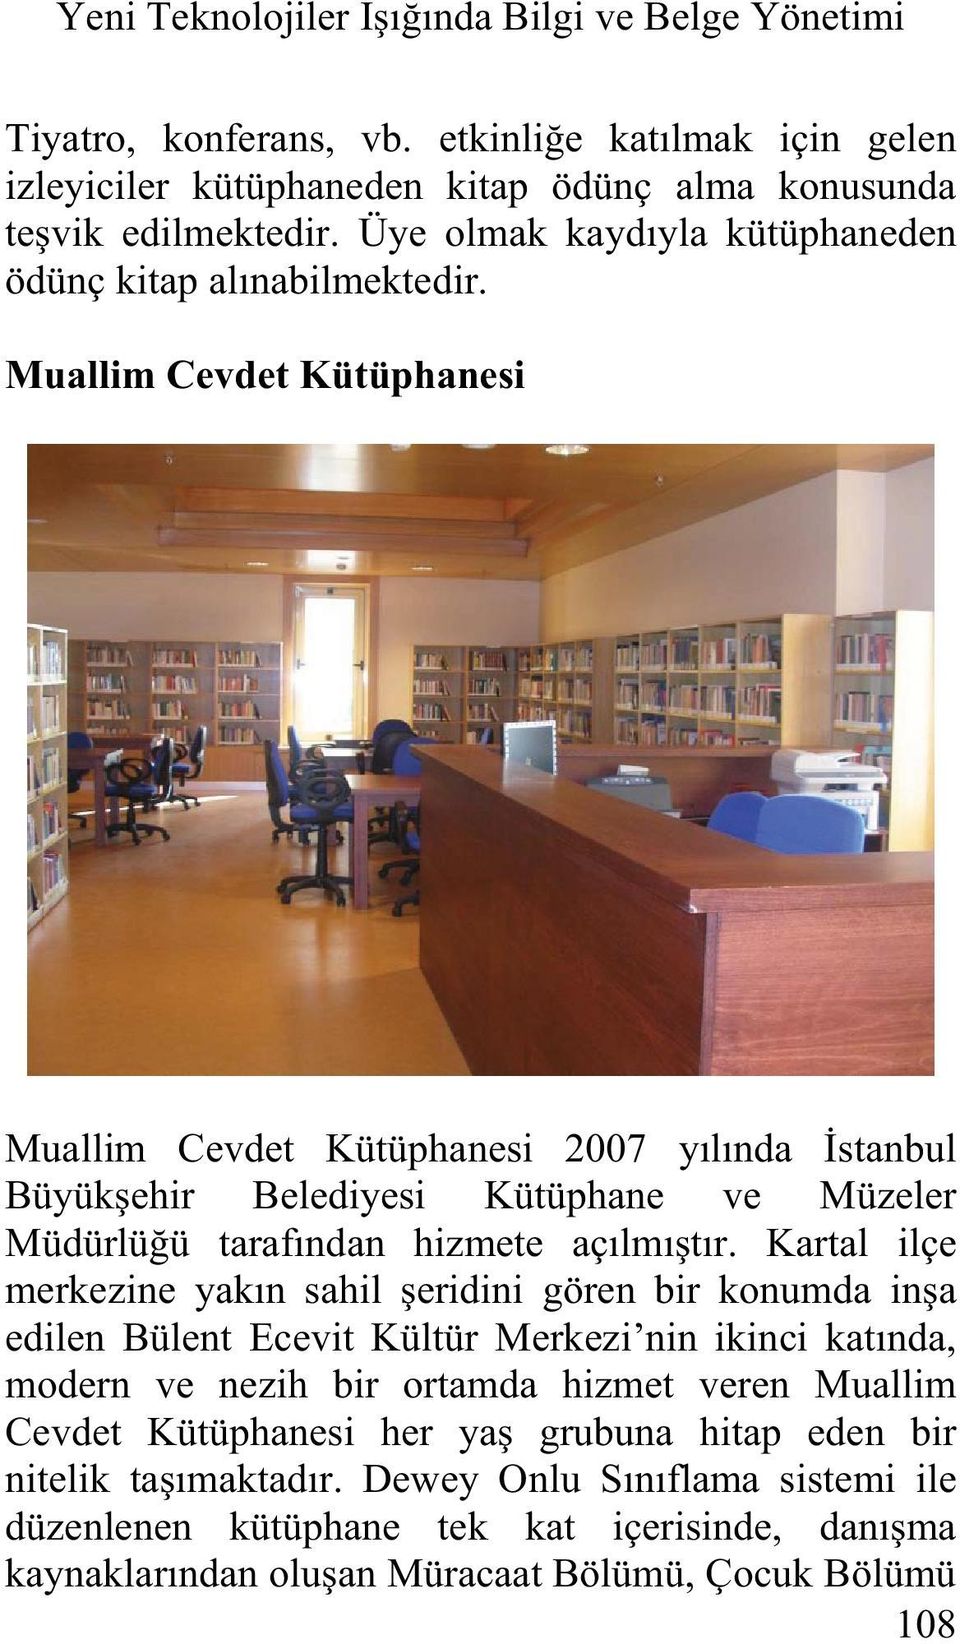 Muallim Cevdet Kütüphane modern ve nezih